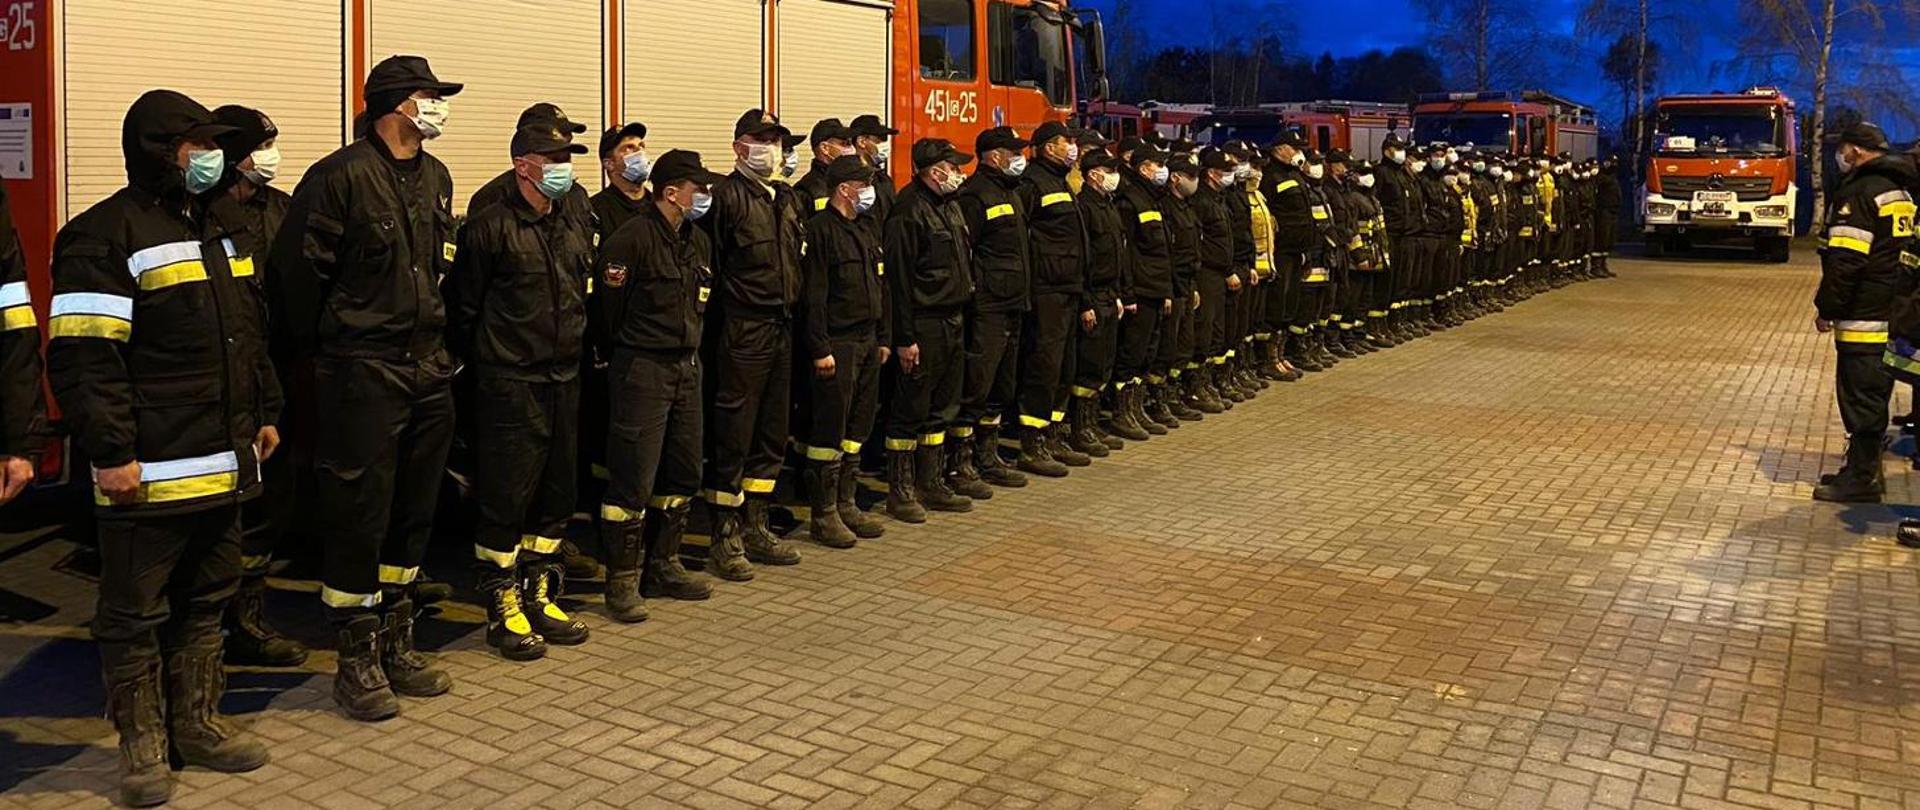 Strażacy stoją w szyku w mundurach koszarowych na tle ustawionych pojazdów pożarniczych